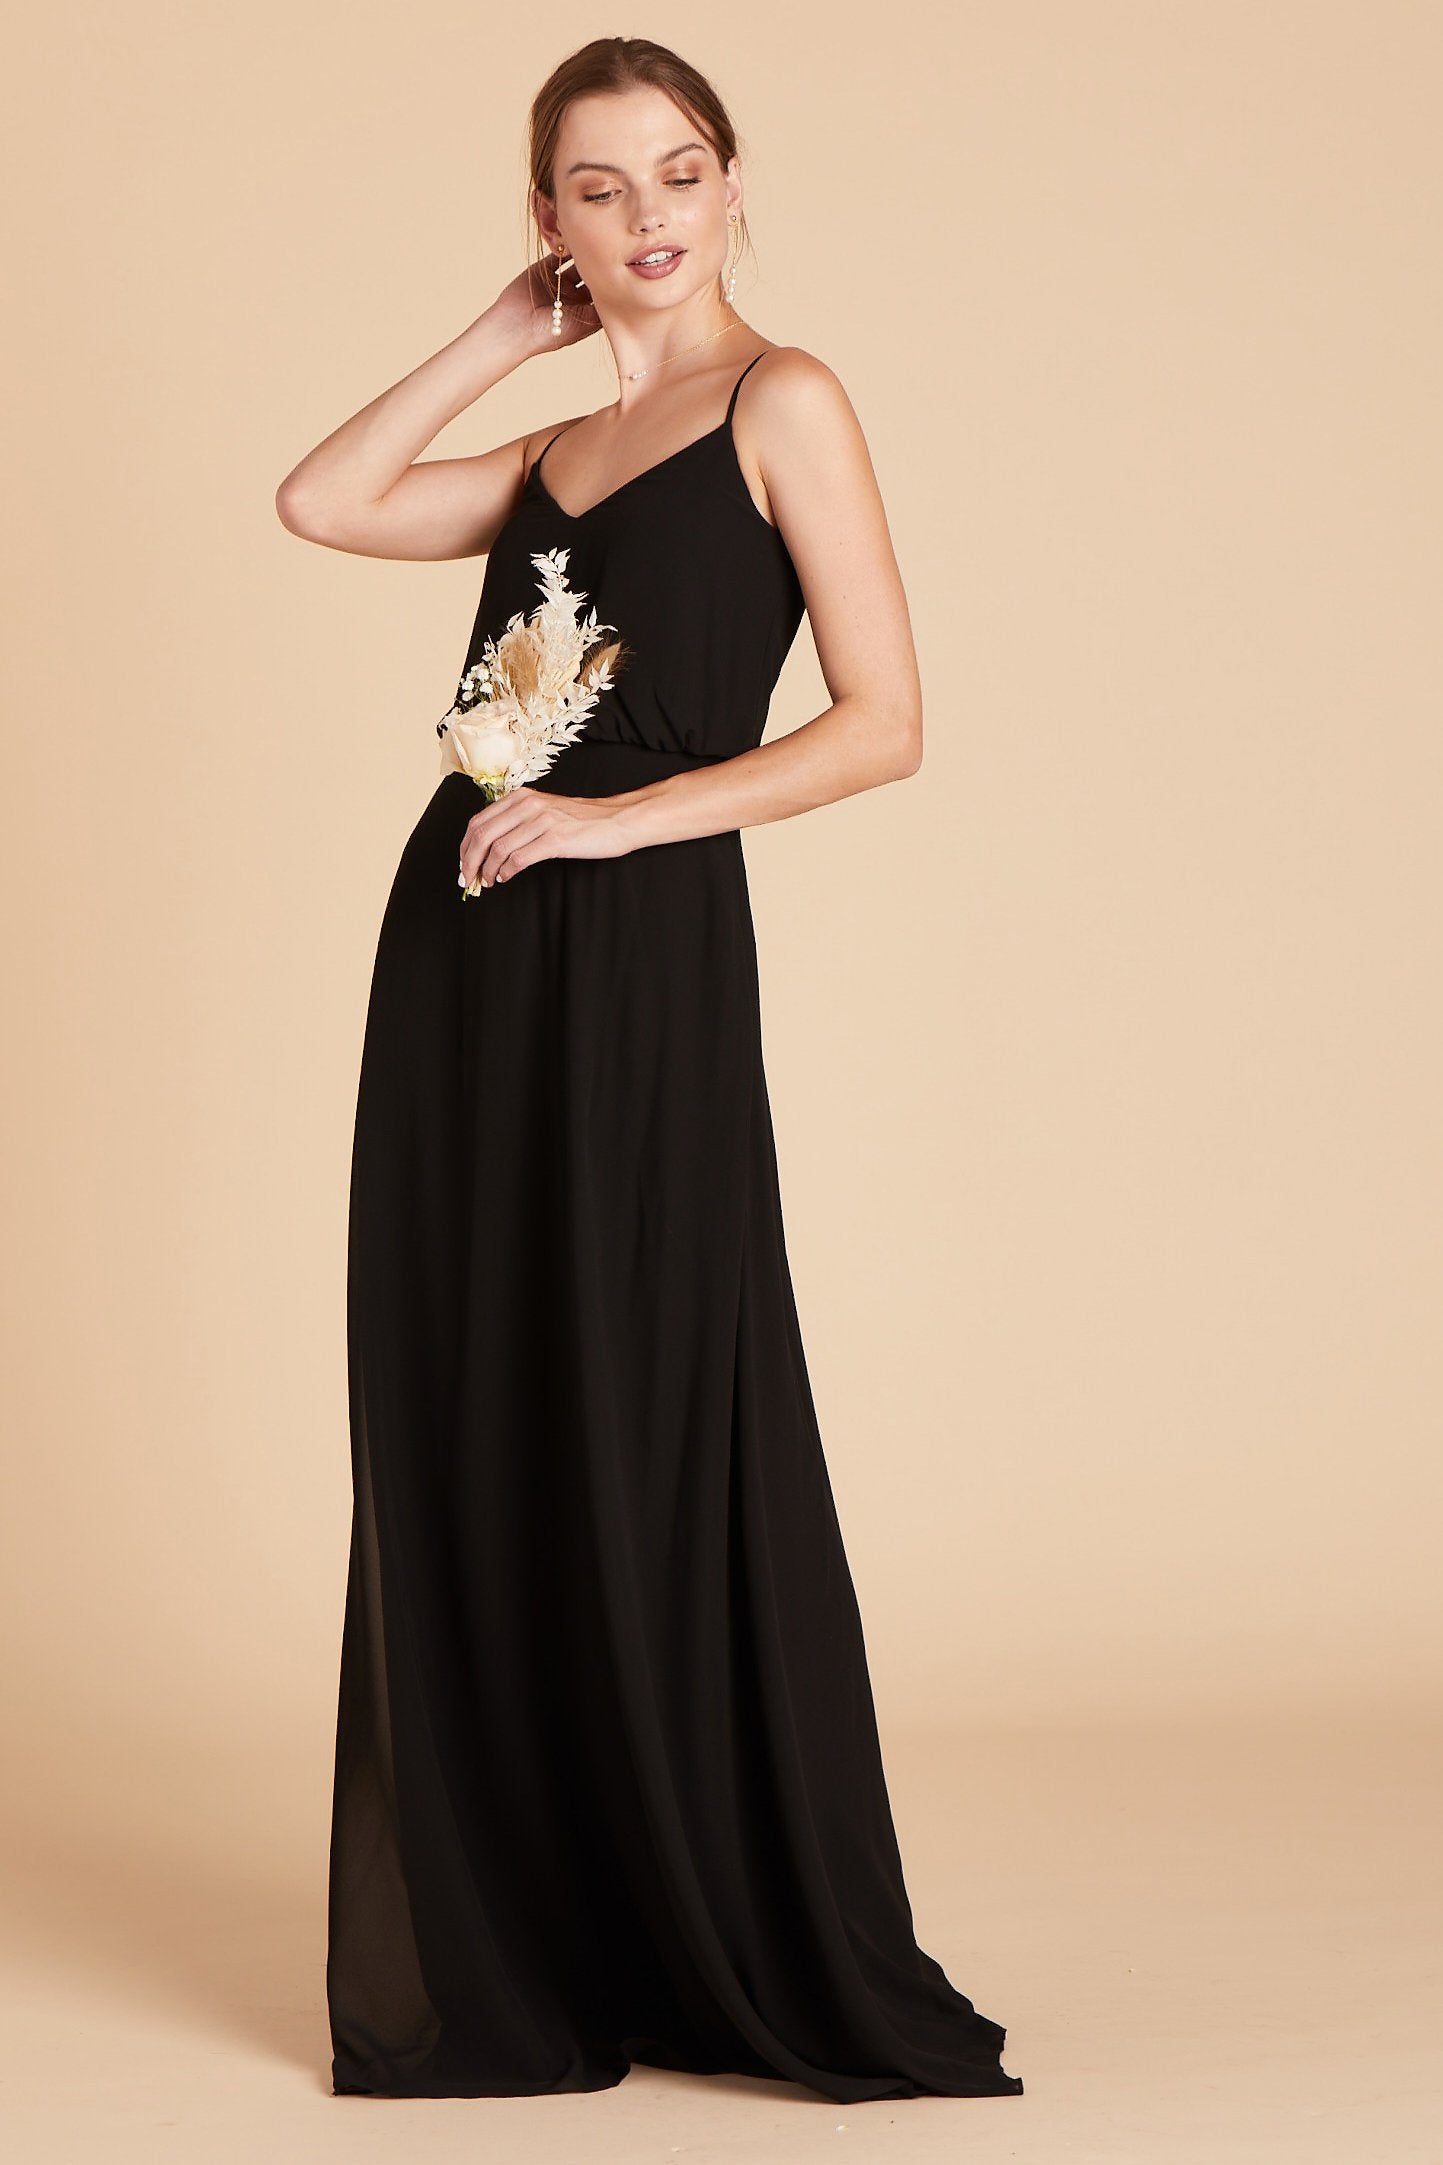 Gwennie bridesmaid dress in black chiffon by Birdy Grey, side view